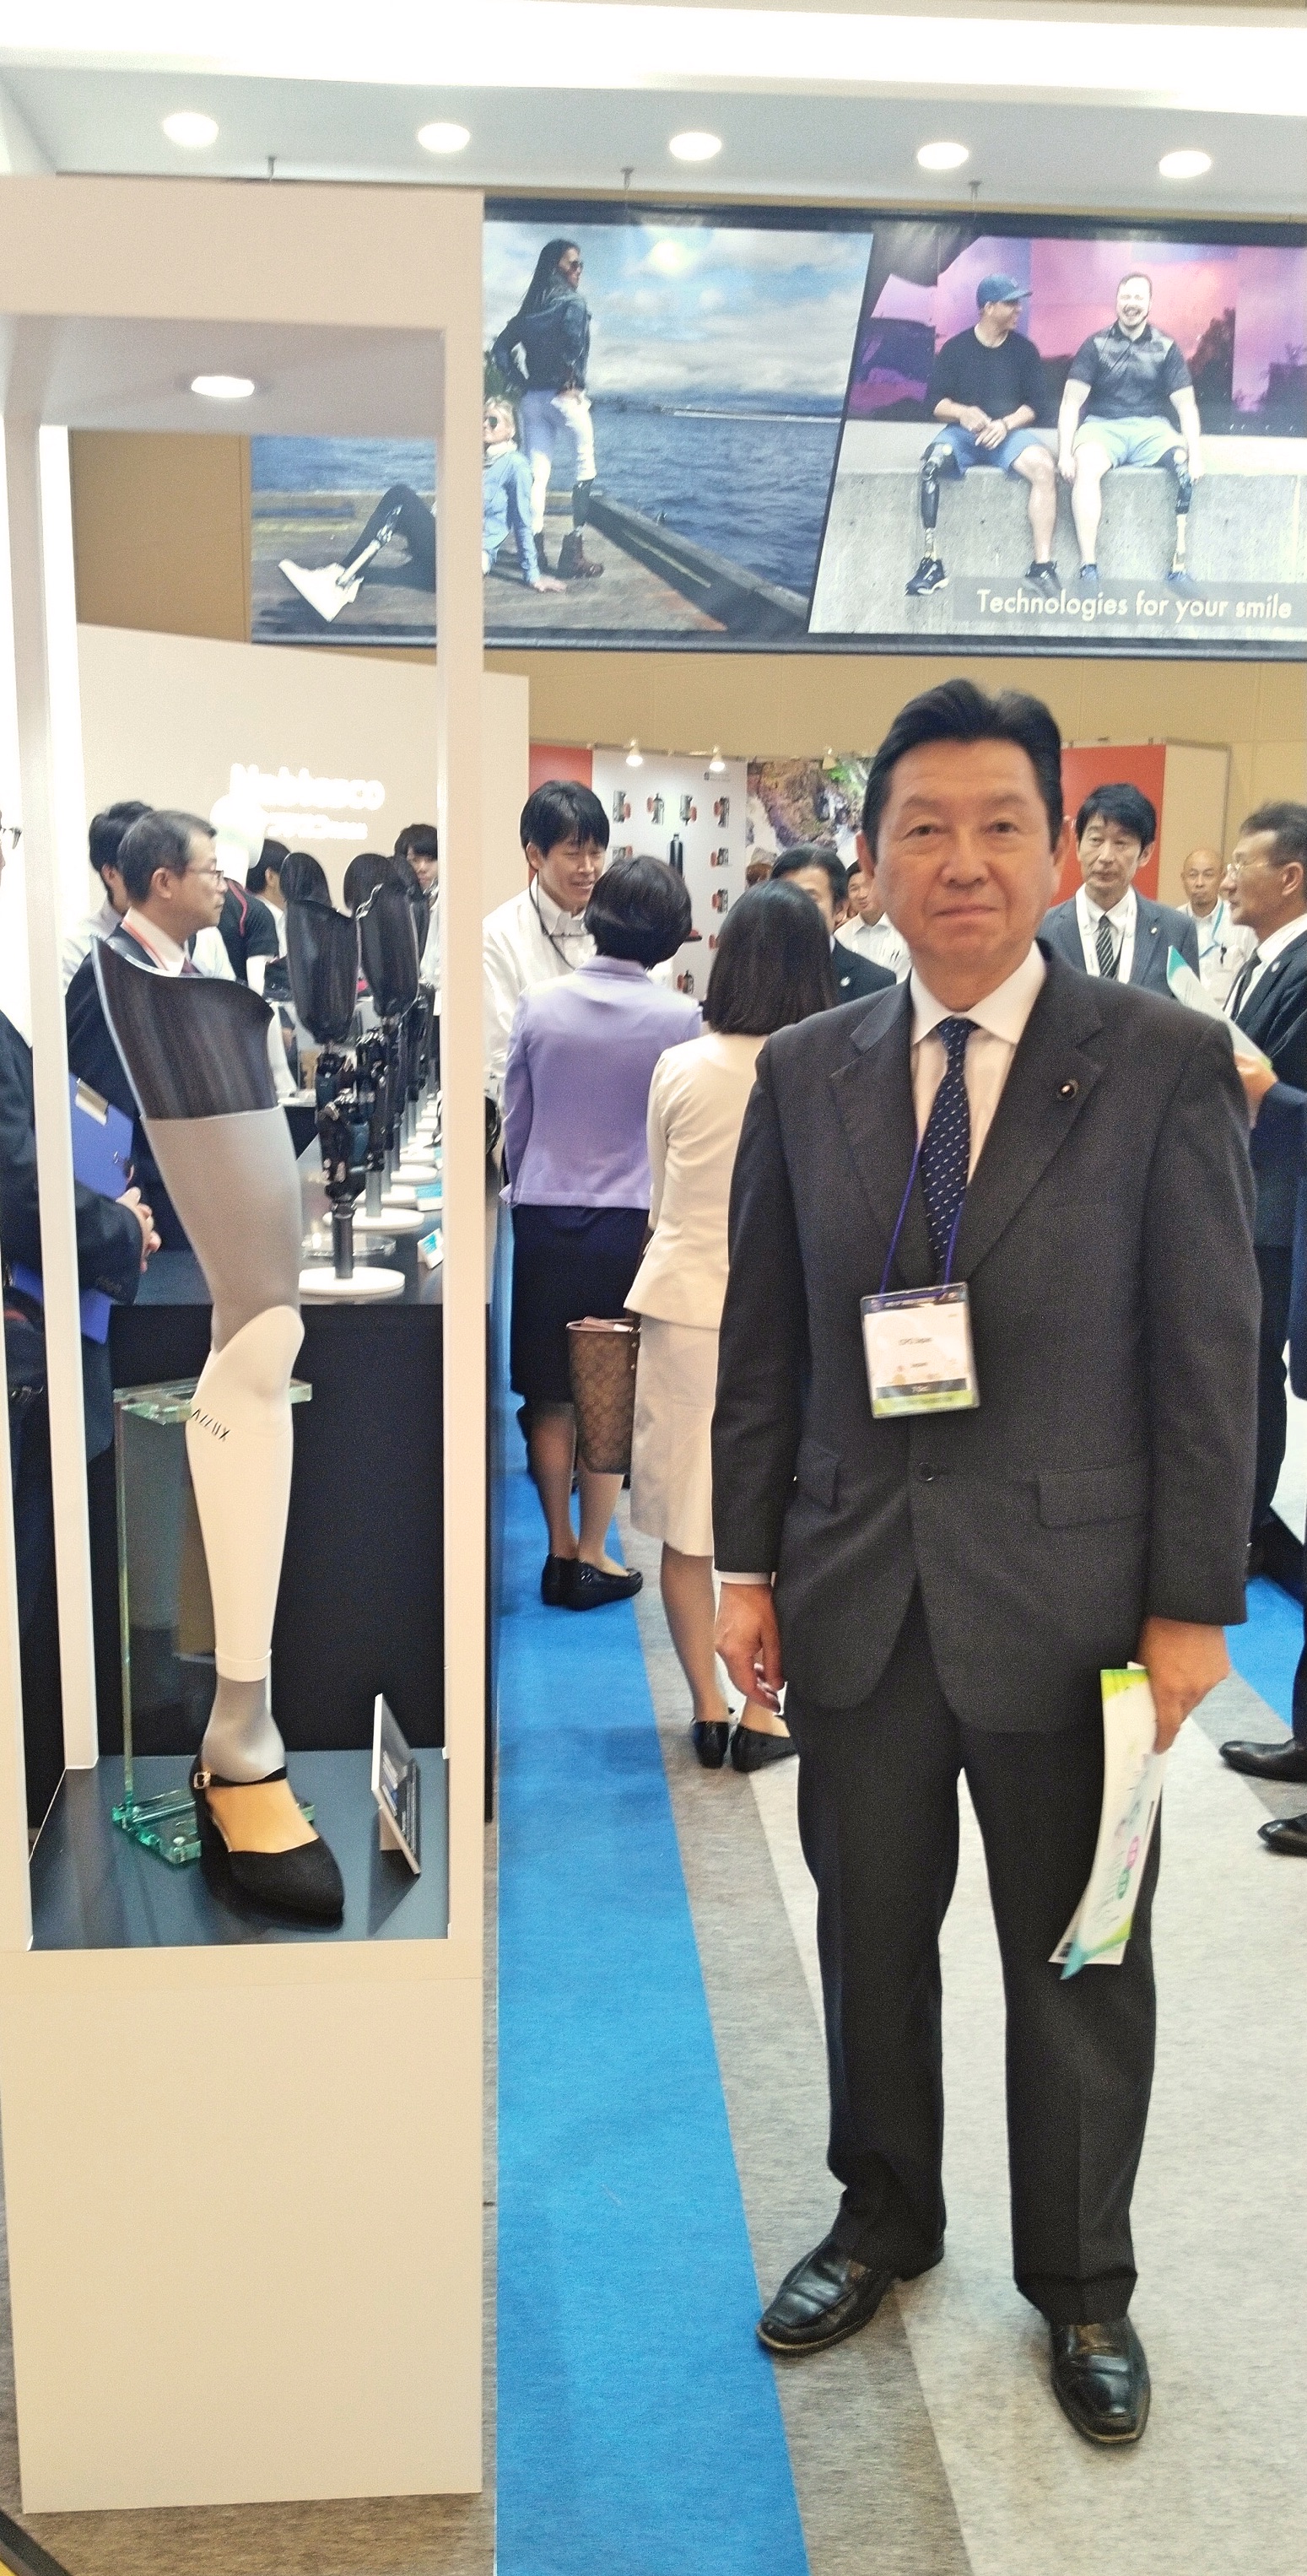 2019年10月7日(月) 国際義肢装具協会世界大会(ISPO2019)に出席